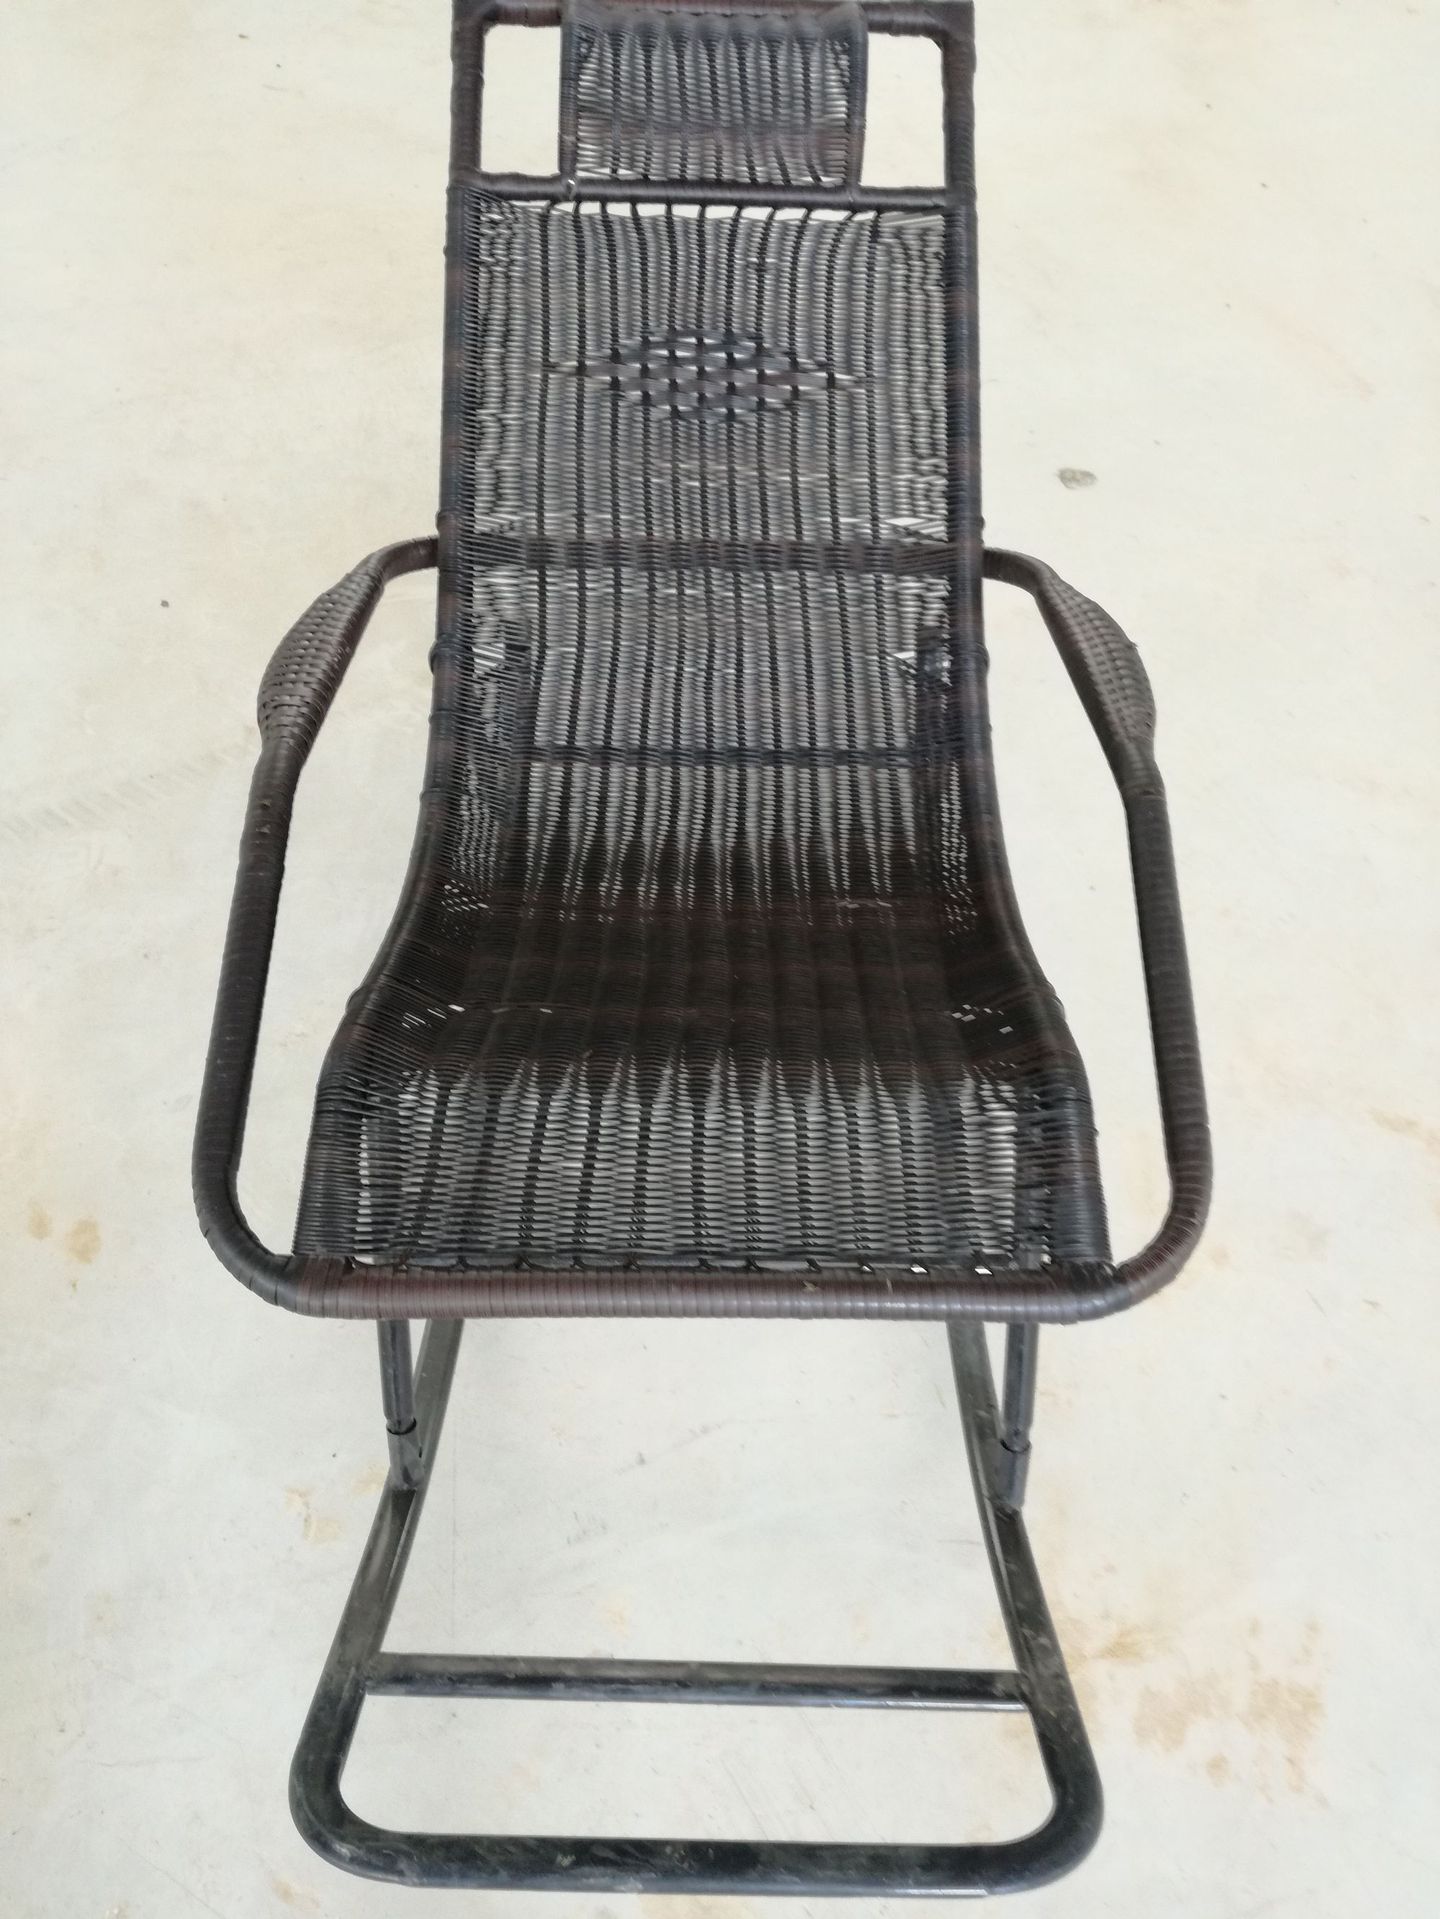 厂家直销双轮摇椅 逍遥椅  藤编躺椅 摇摇椅 质量可靠一件代发示例图5